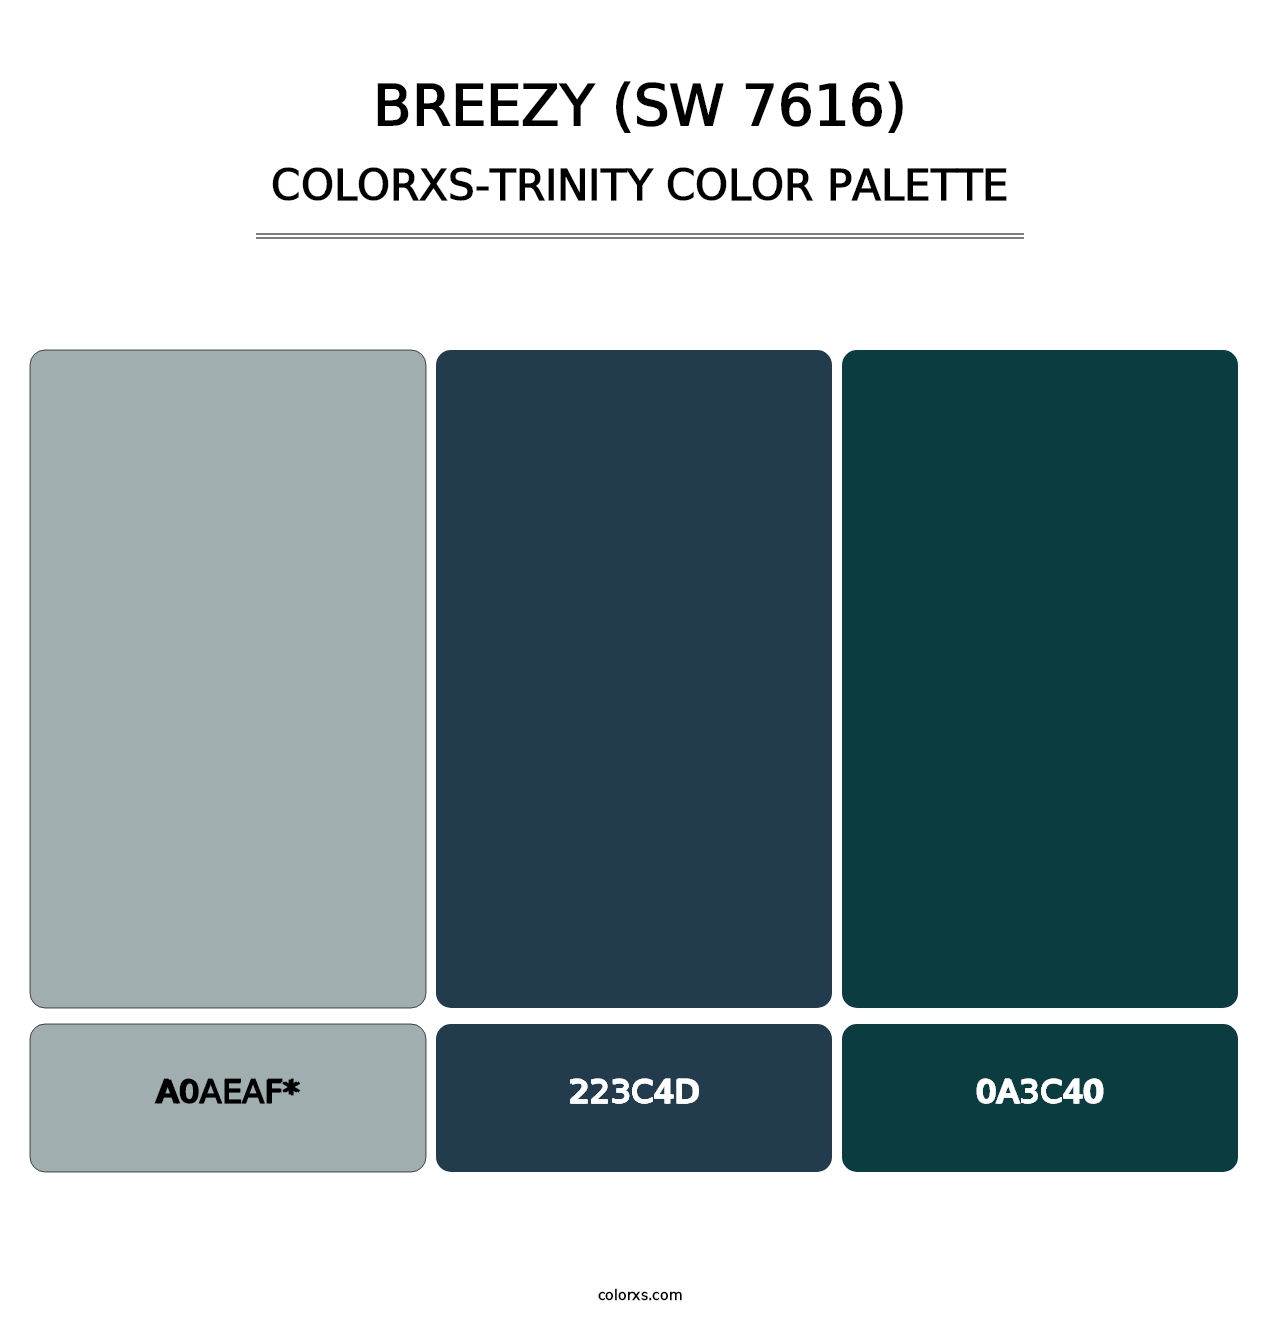 Breezy (SW 7616) - Colorxs Trinity Palette